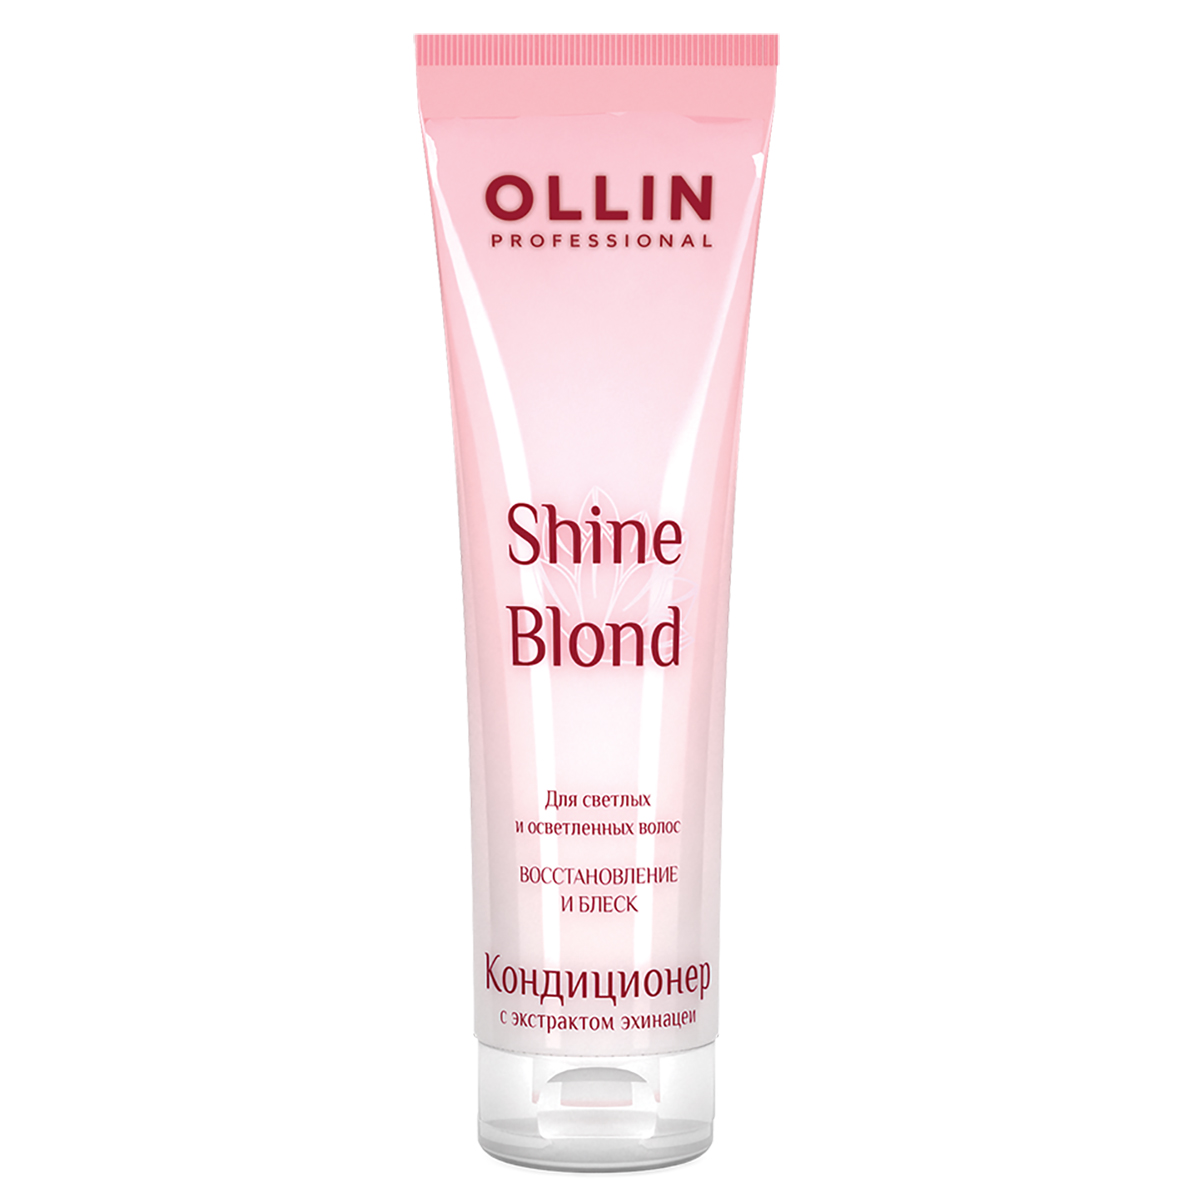 Shine Blond Кондиционер с экстрактом эхинацеи 250 мл, OLLIN